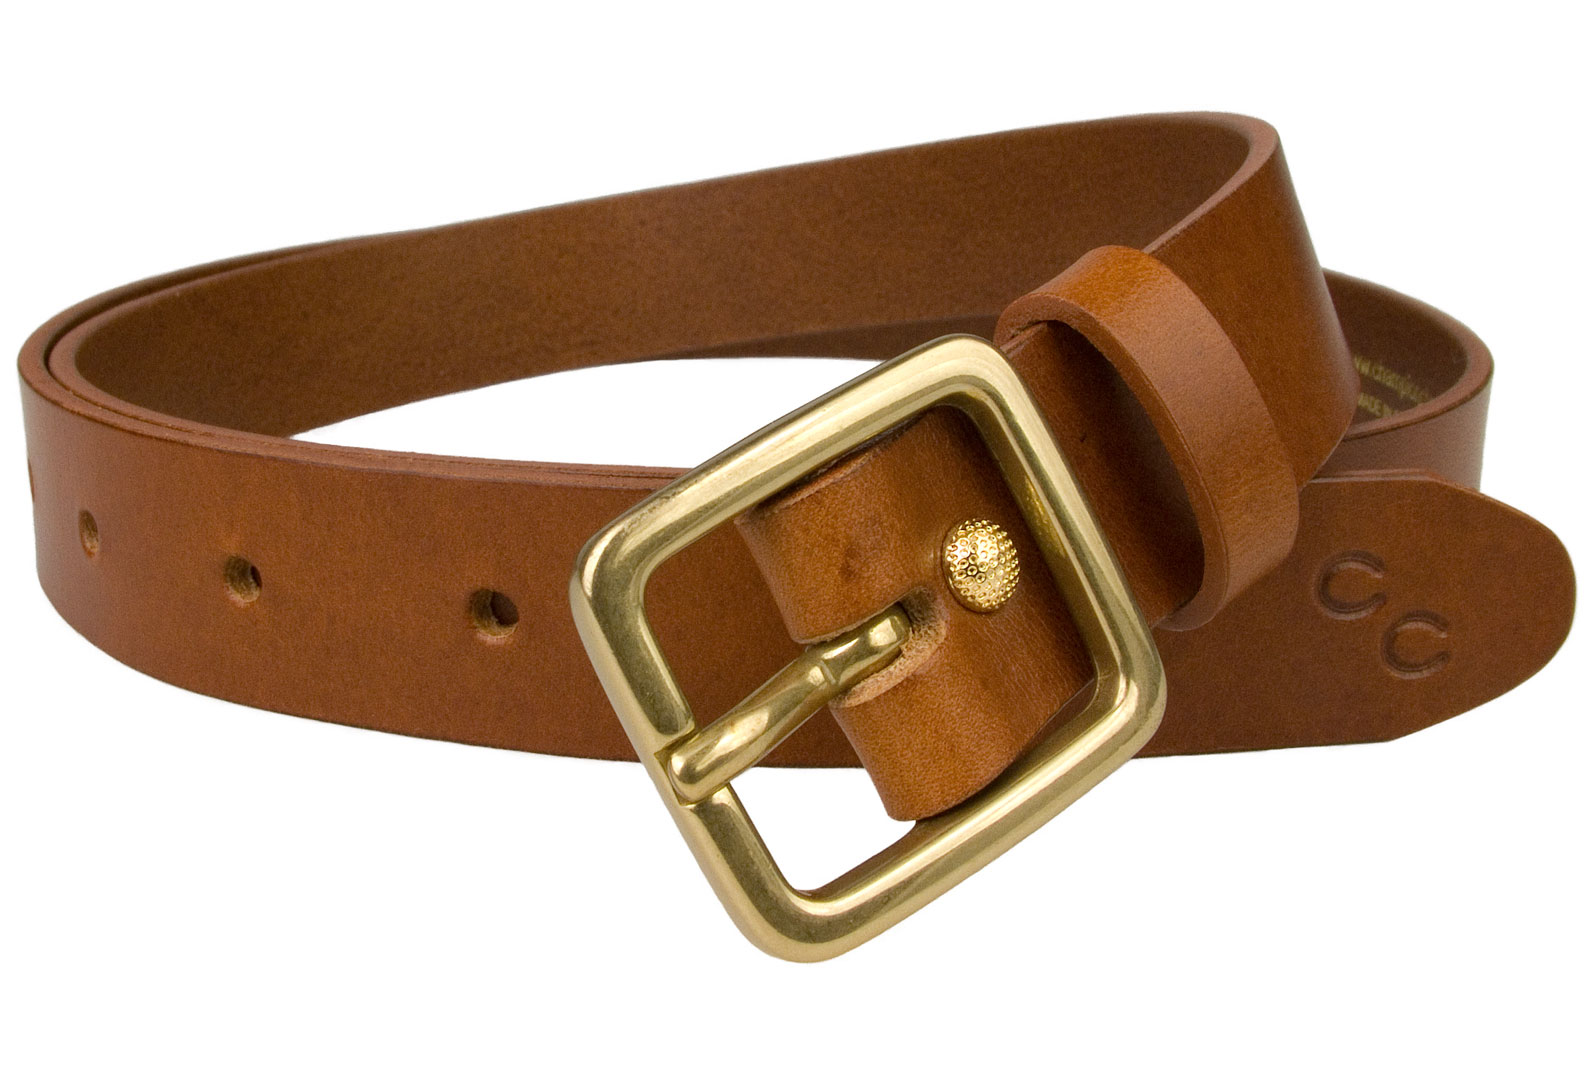 Womens Tan Leather Belt Solid Brass Buckle 1 Inch Wide - Belt Designs